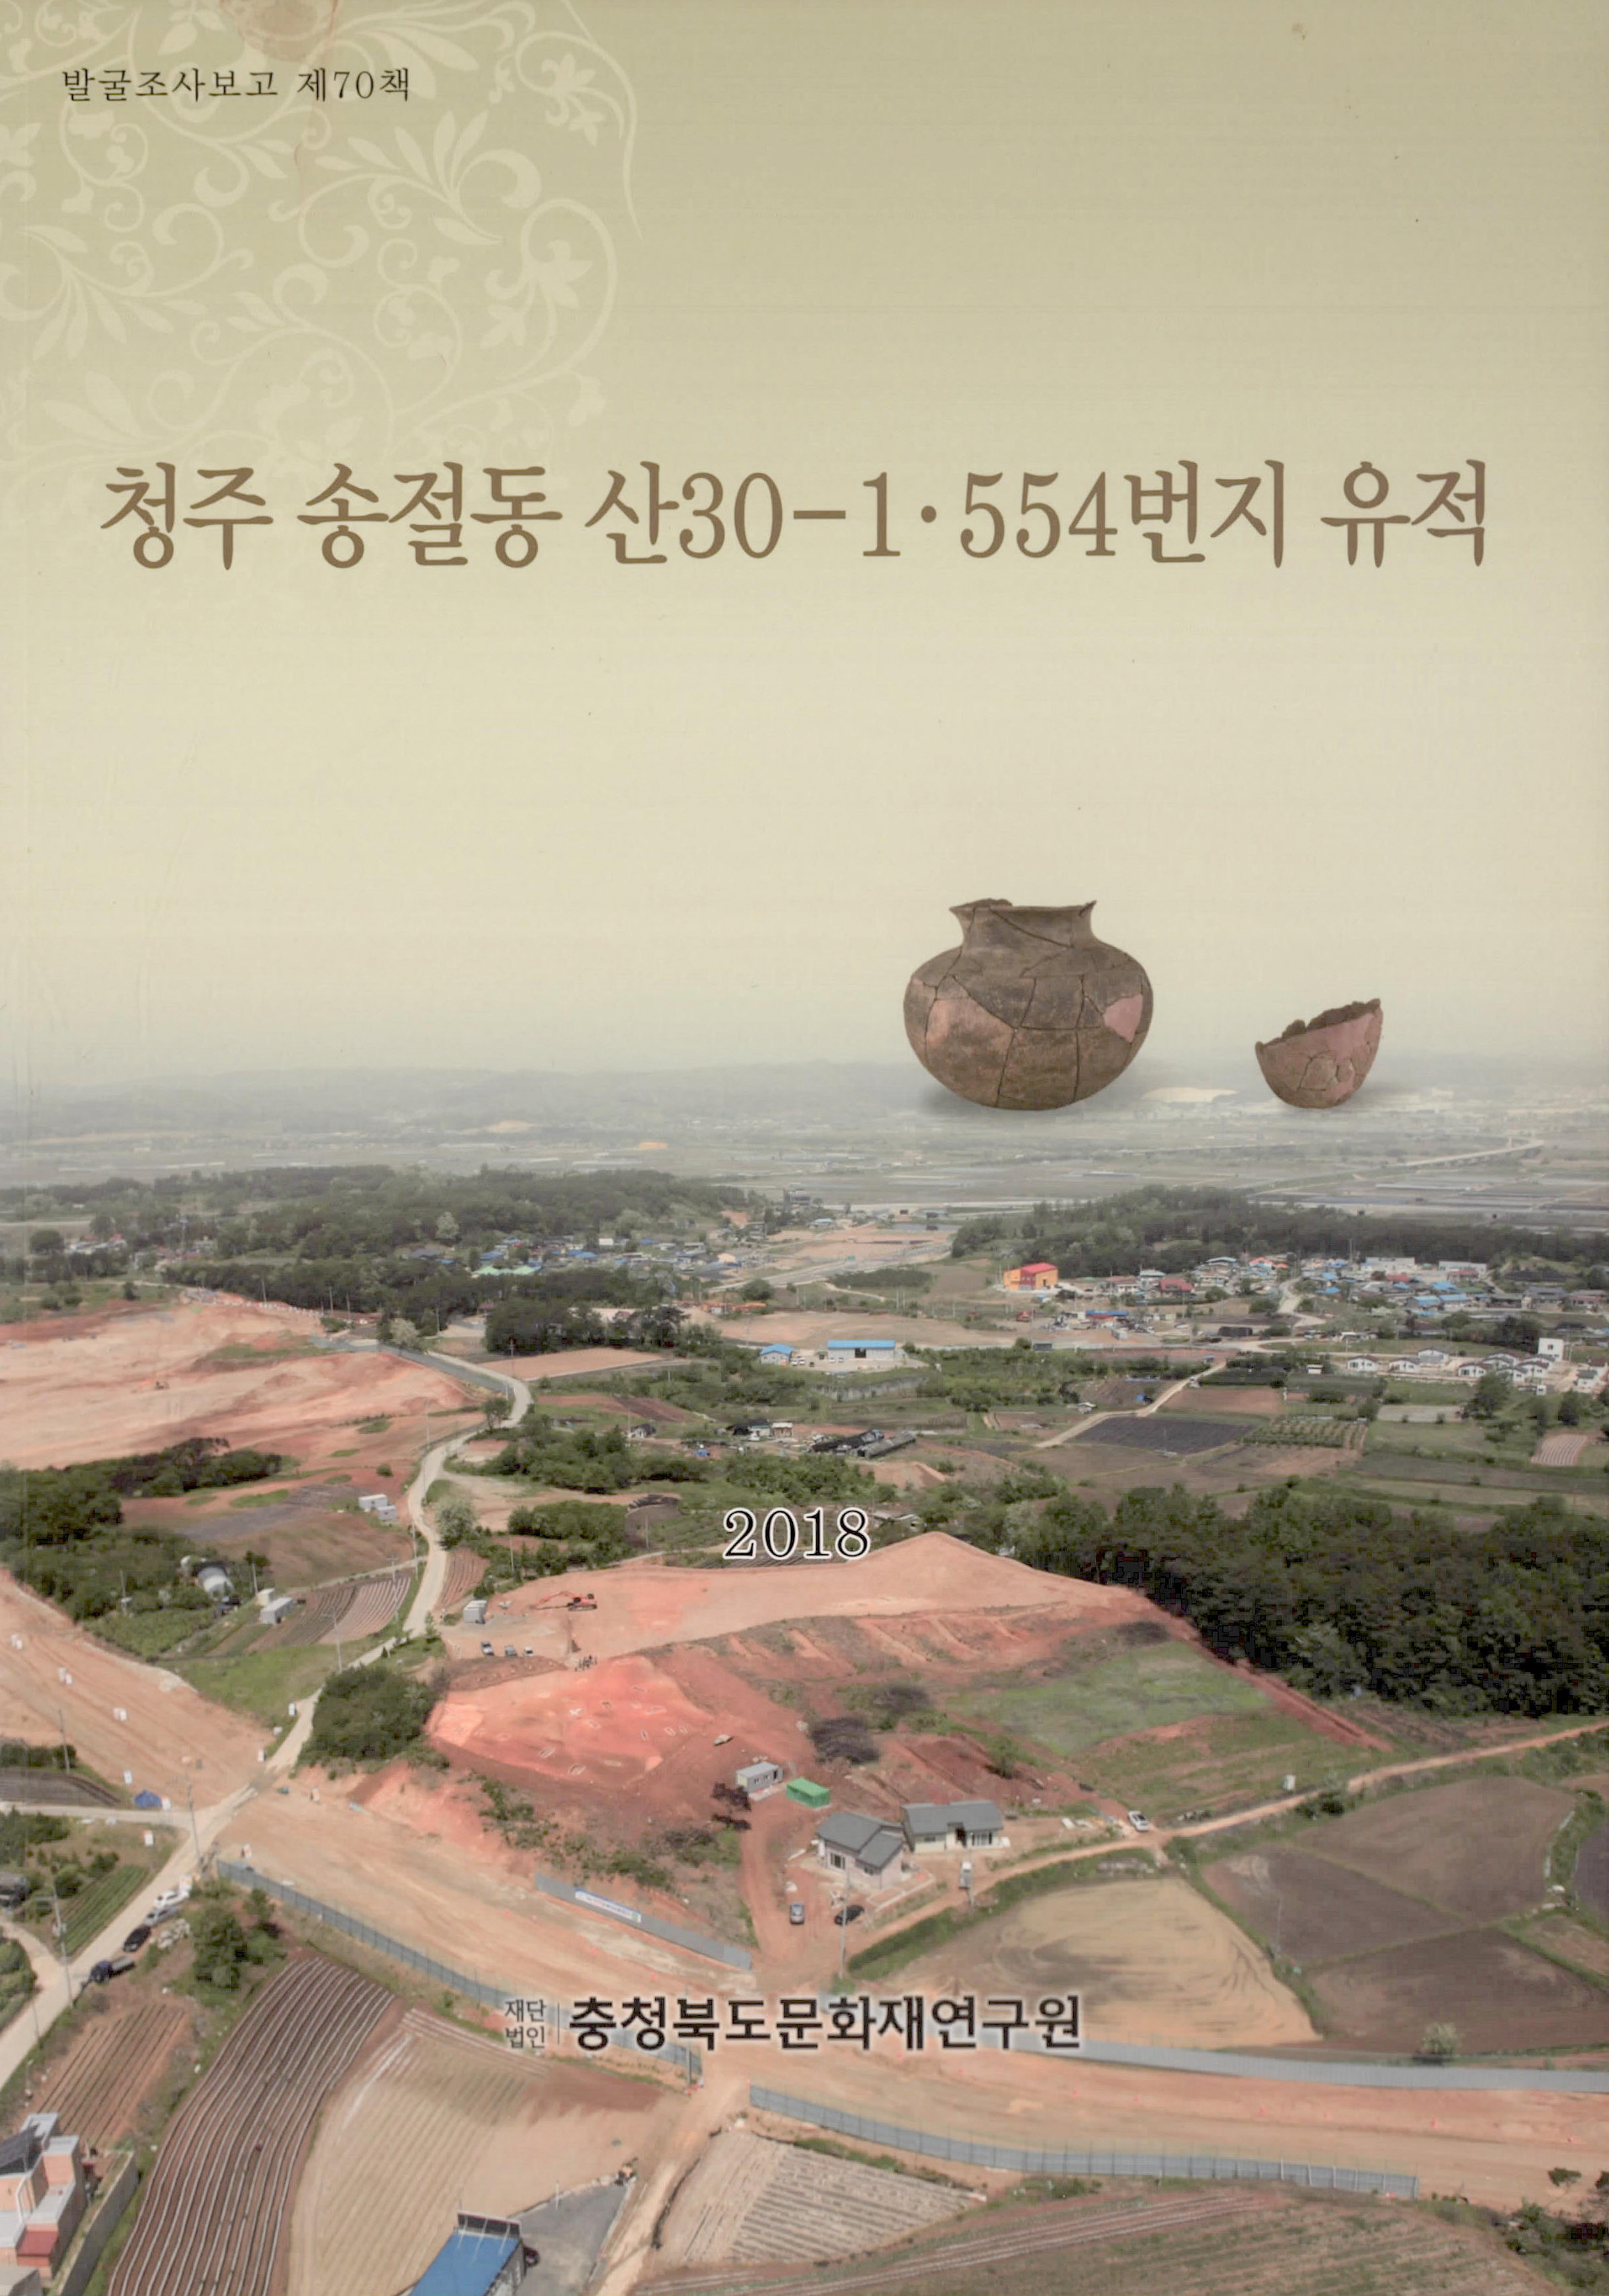 발굴조사보고 청주 송절동 산30-1 . 554번지 유적